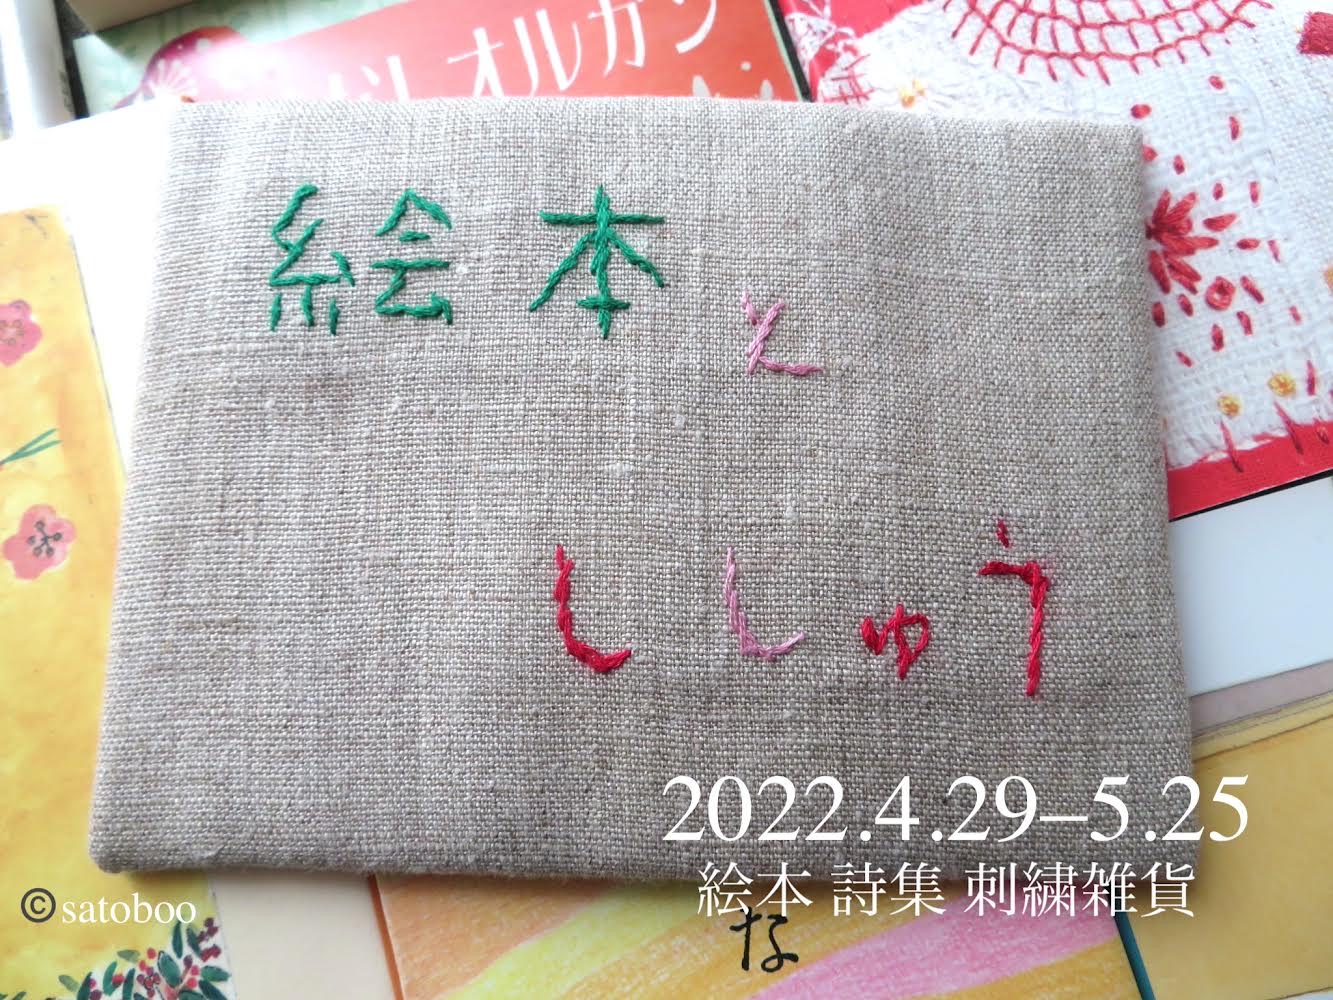 2022.4.29(金)~5.25(水)「絵本とししゅう」展に参加します！